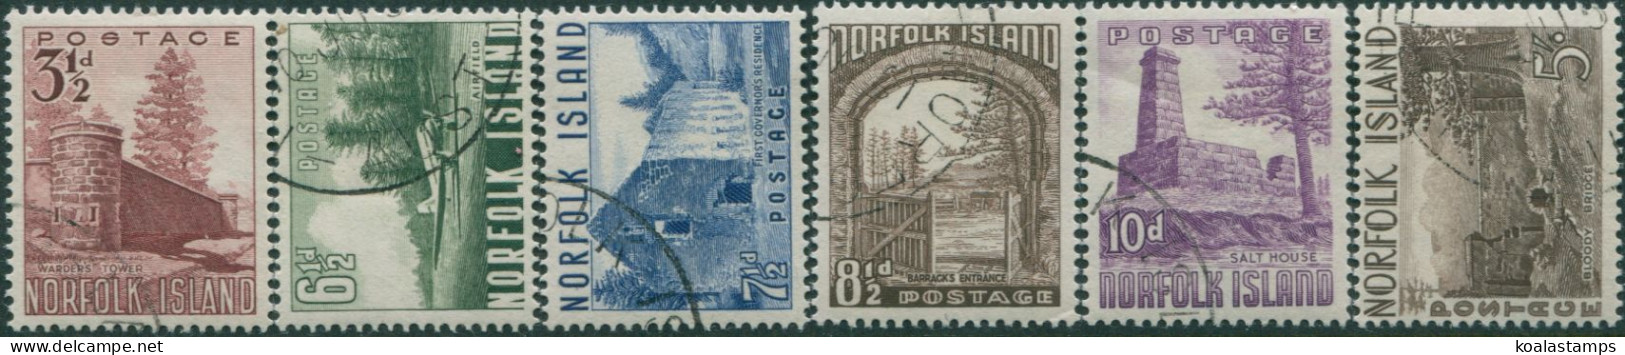 Norfolk Island 1953 SG13-18 Definitives Set FU - Norfolkinsel